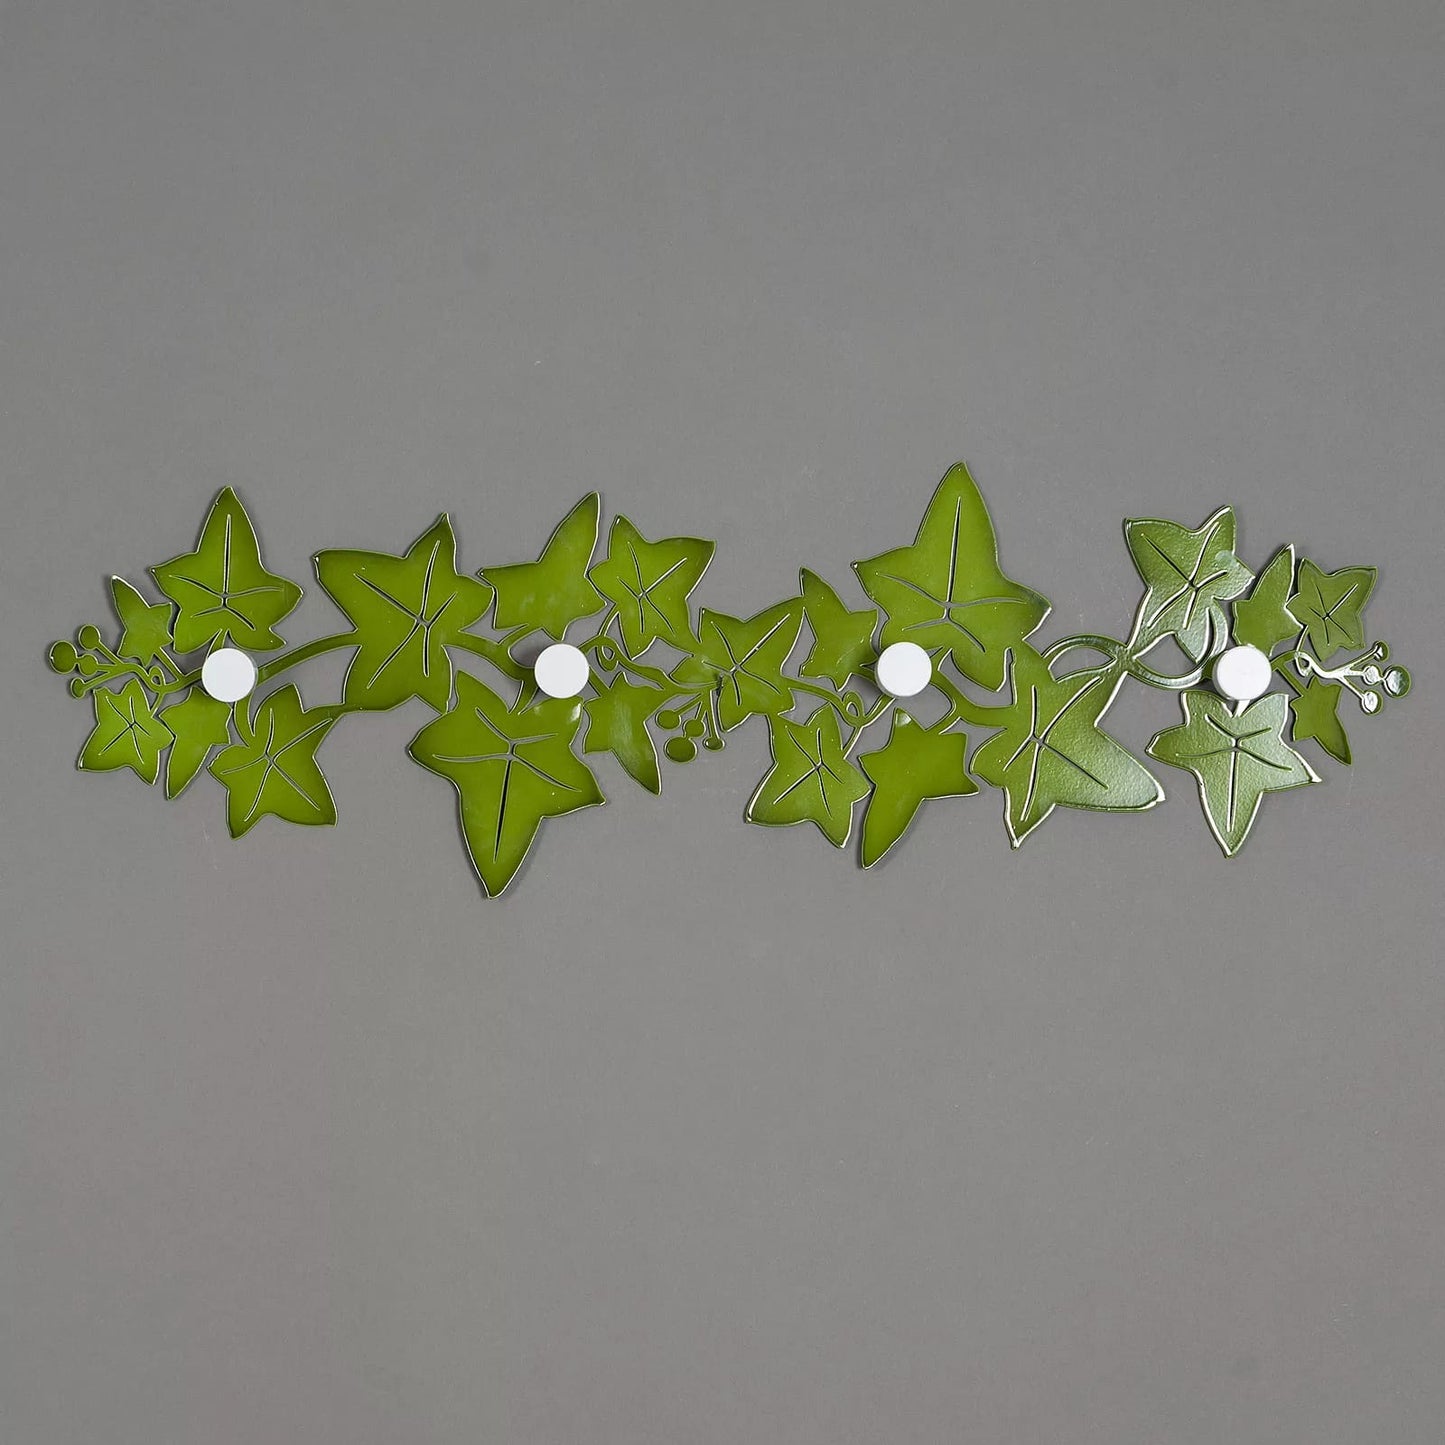 ppendiabiti da parete in metallo di colore verde lucido. Dimensioni: cm. 82 x 26h